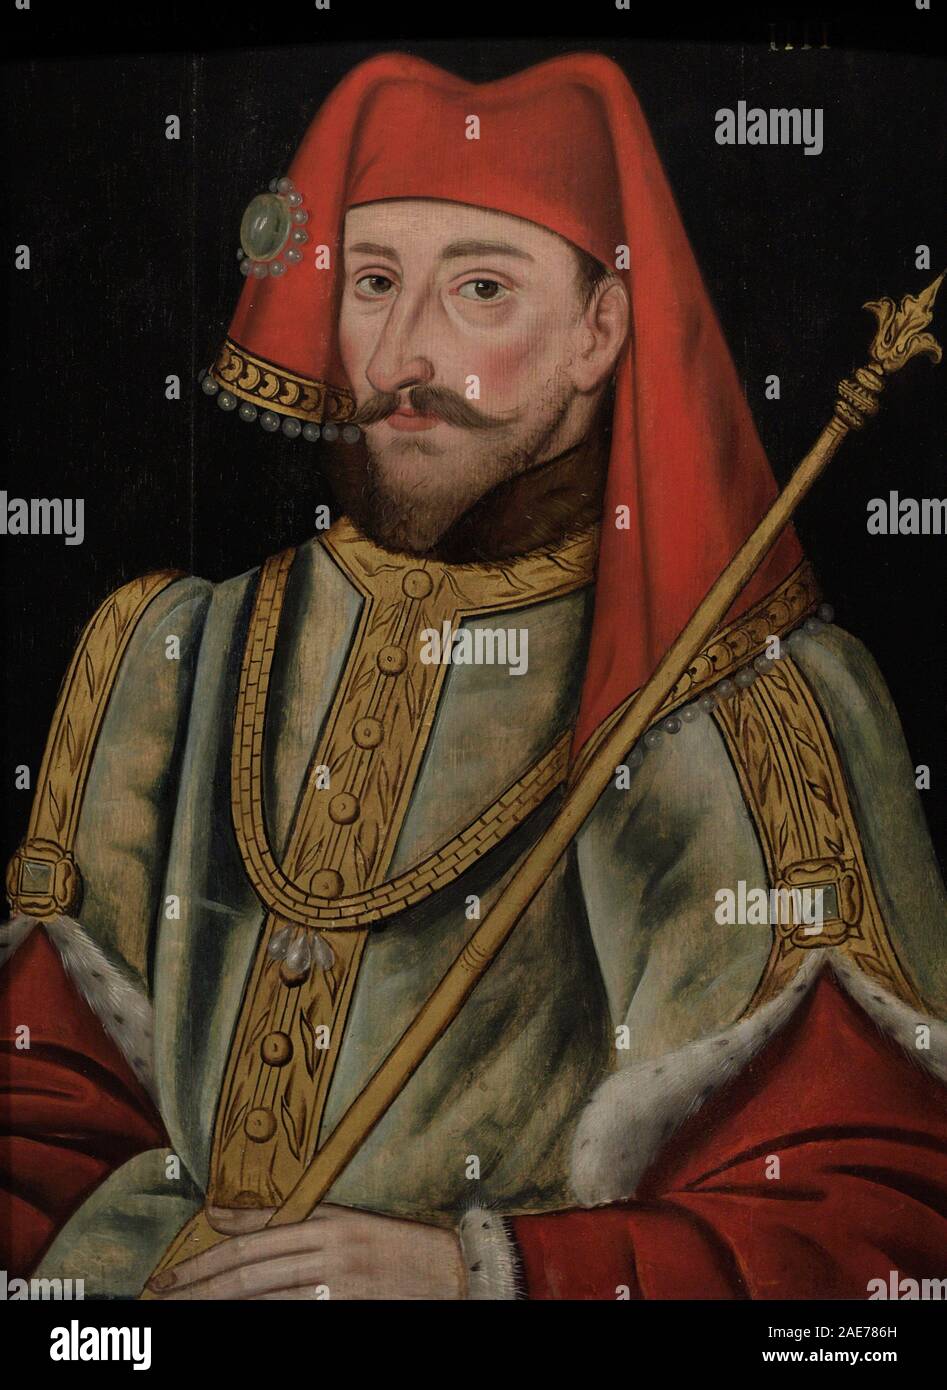 Enrique IV de Inglaterra (1367-1413). Rey de Inglaterra entre 1399 y 1413. Casa Real de Lancaster. Autor no identificado. Oleo sobre lienzo, 1597-1618. National Portrait Gallery. Londres. Inglaterra. Banque D'Images